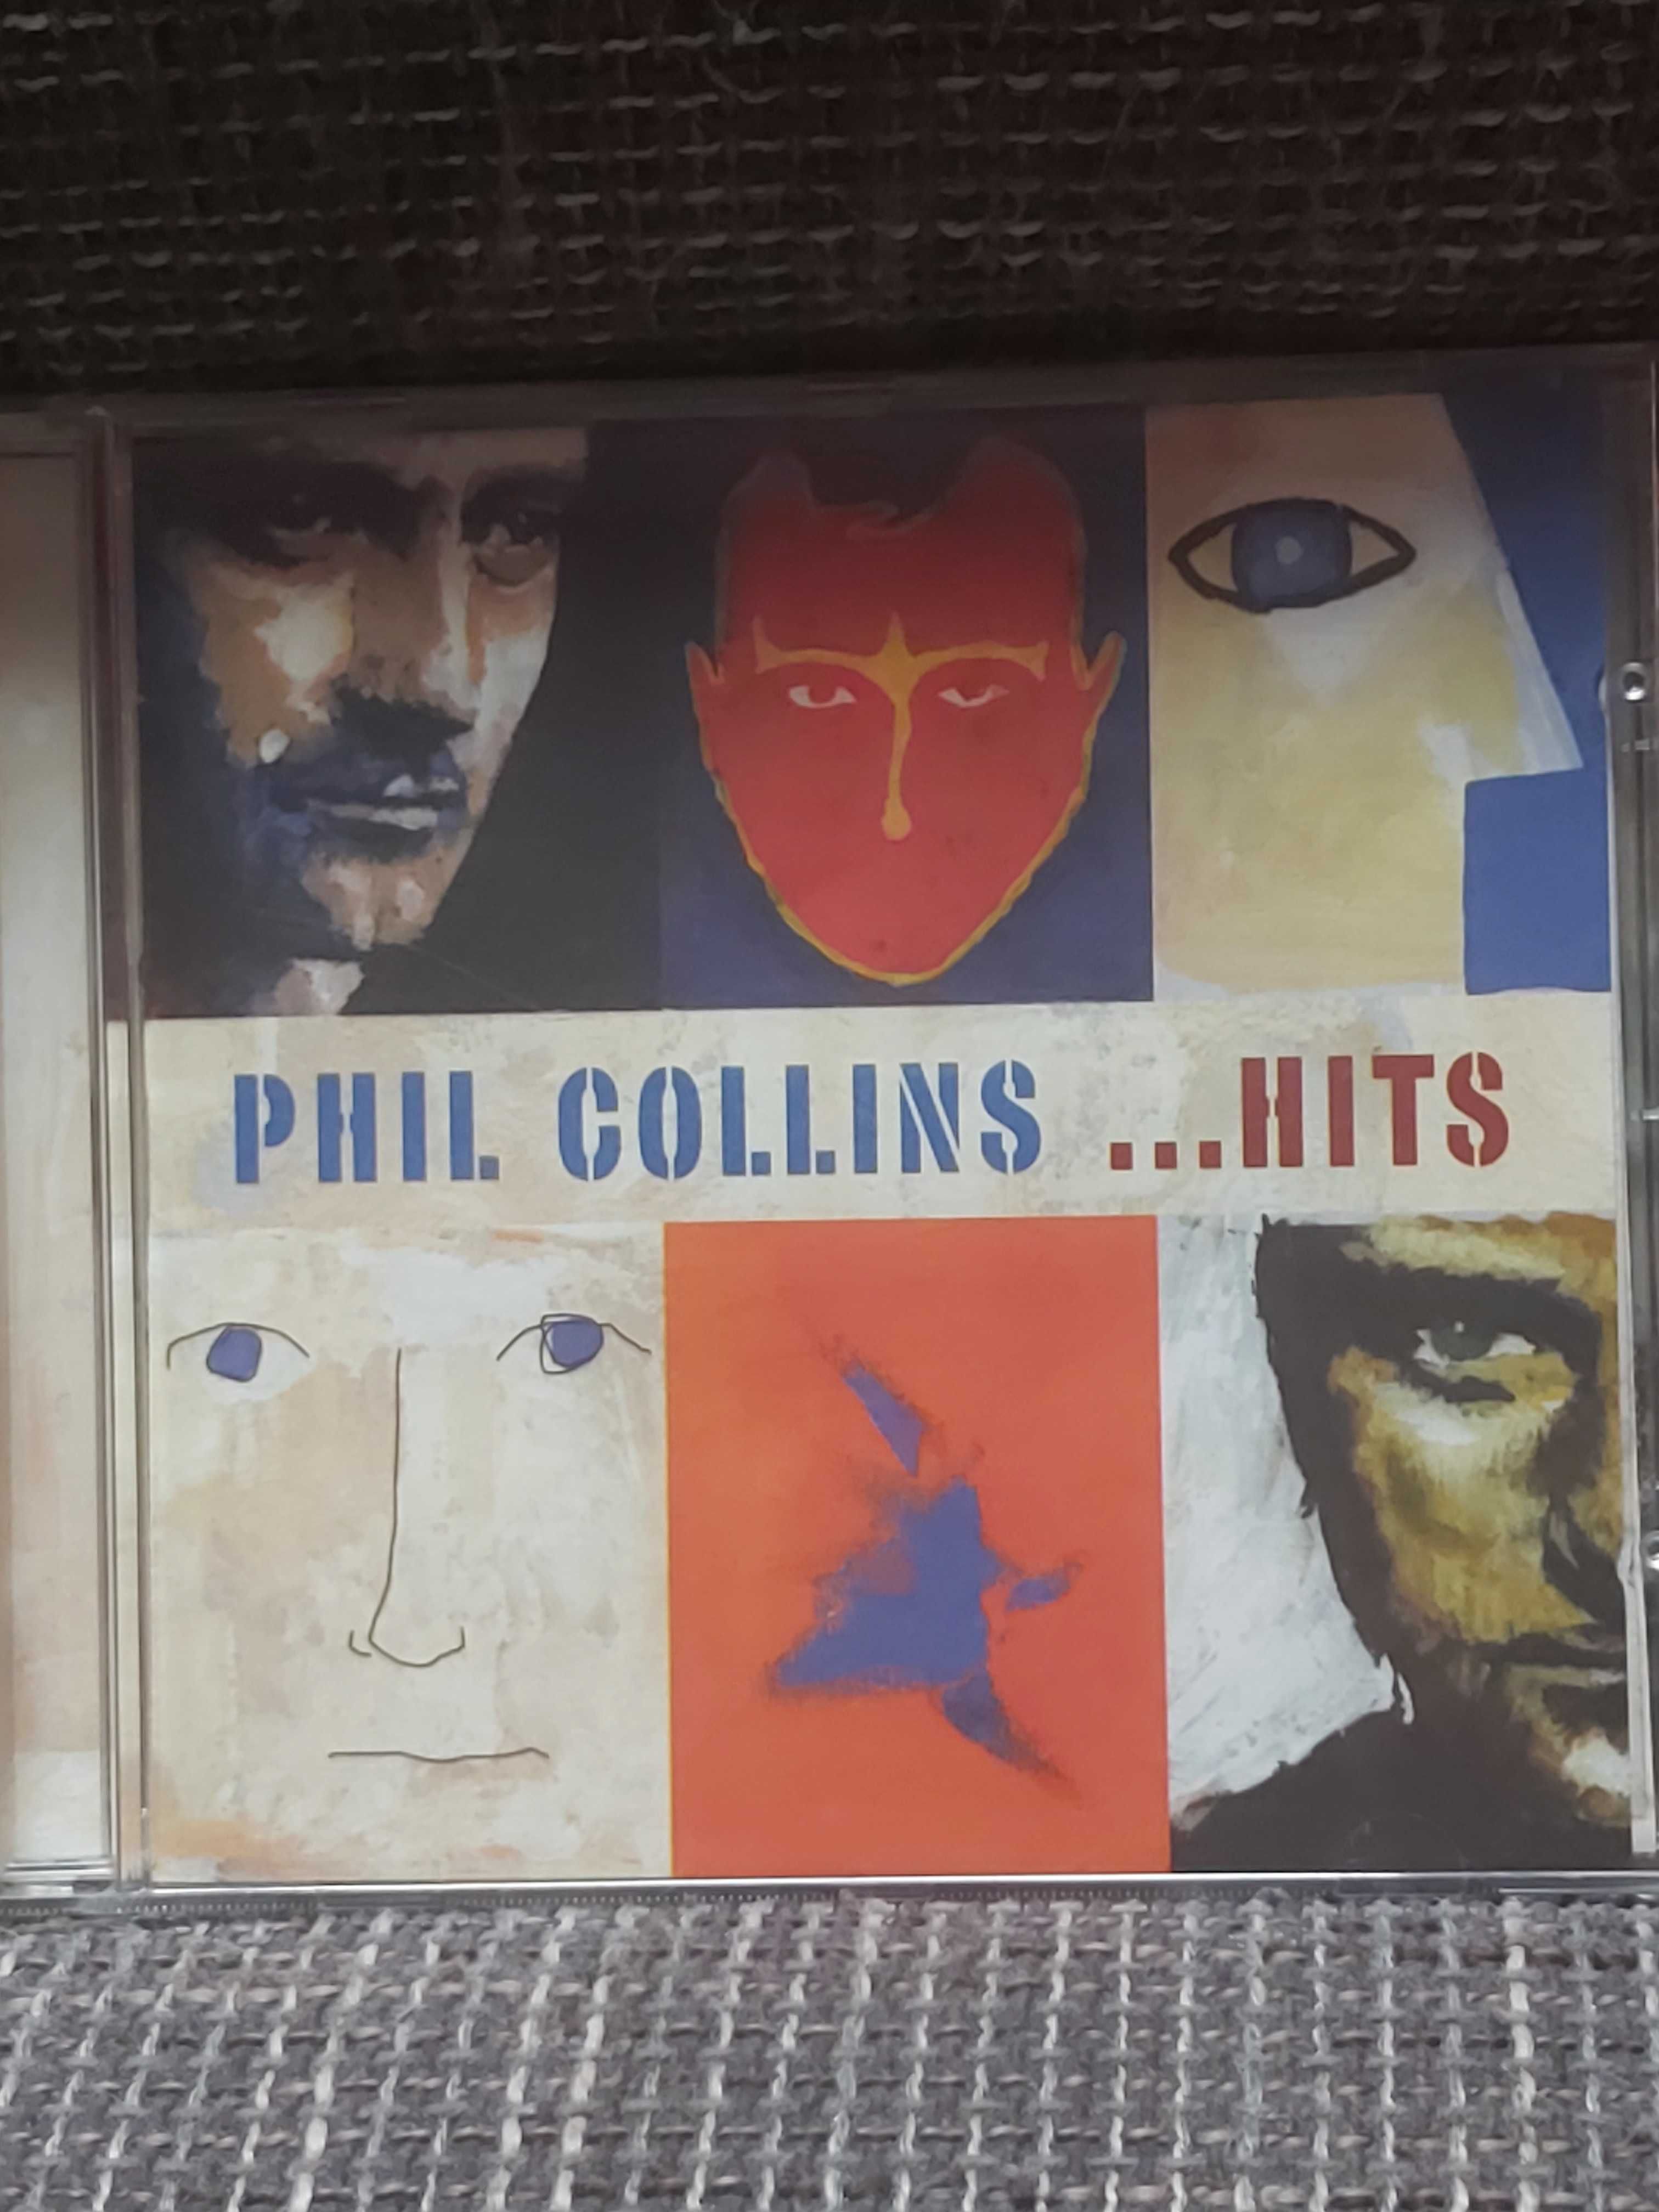 Phil Collins hitspolecam state wydanie